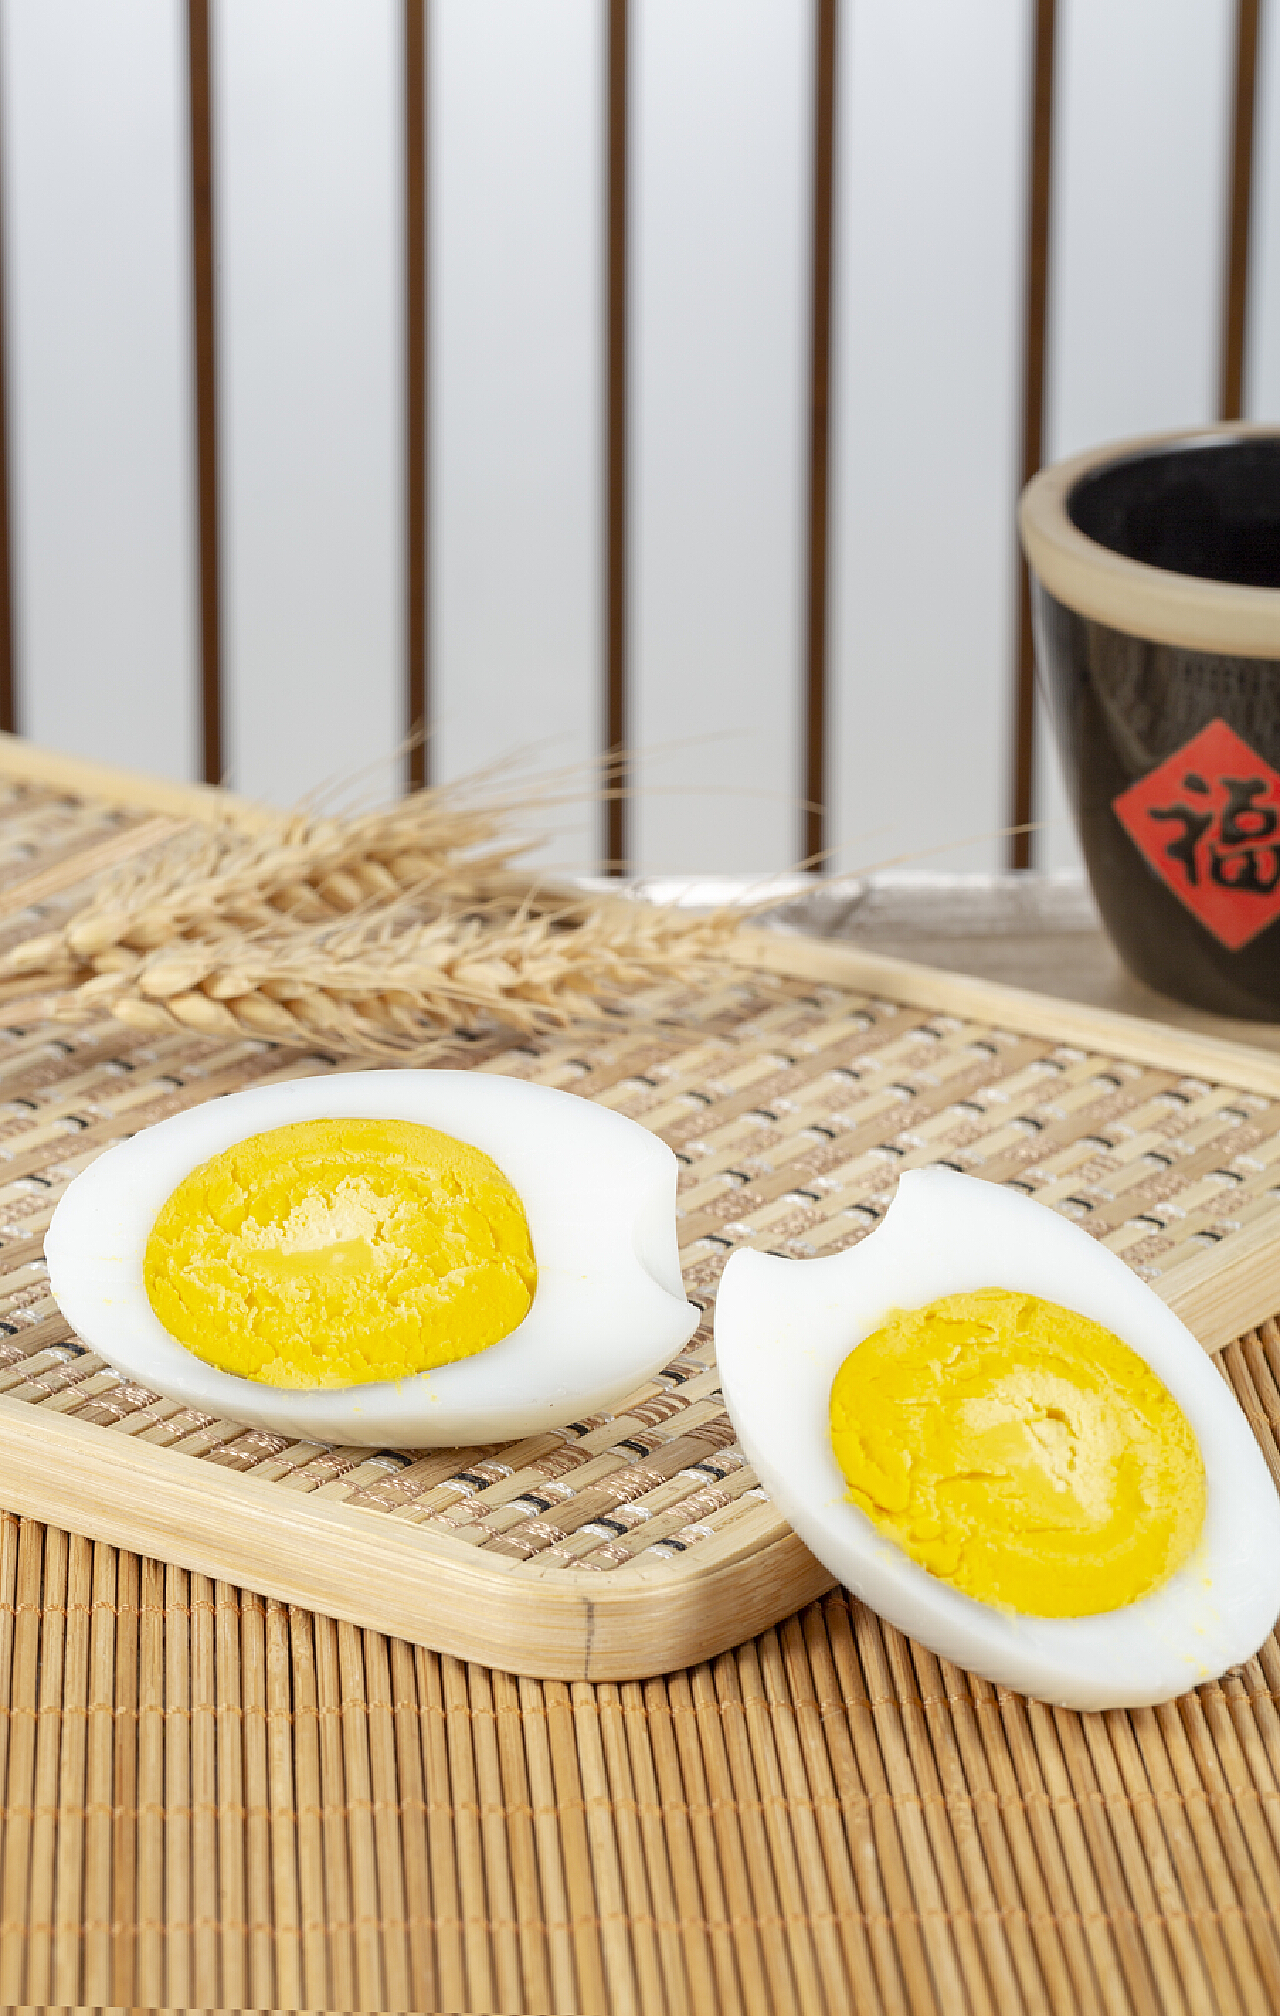 双黄鹅蛋都是假的吗，为什么网上一卖鹅蛋就是双黄的？是假的吗？